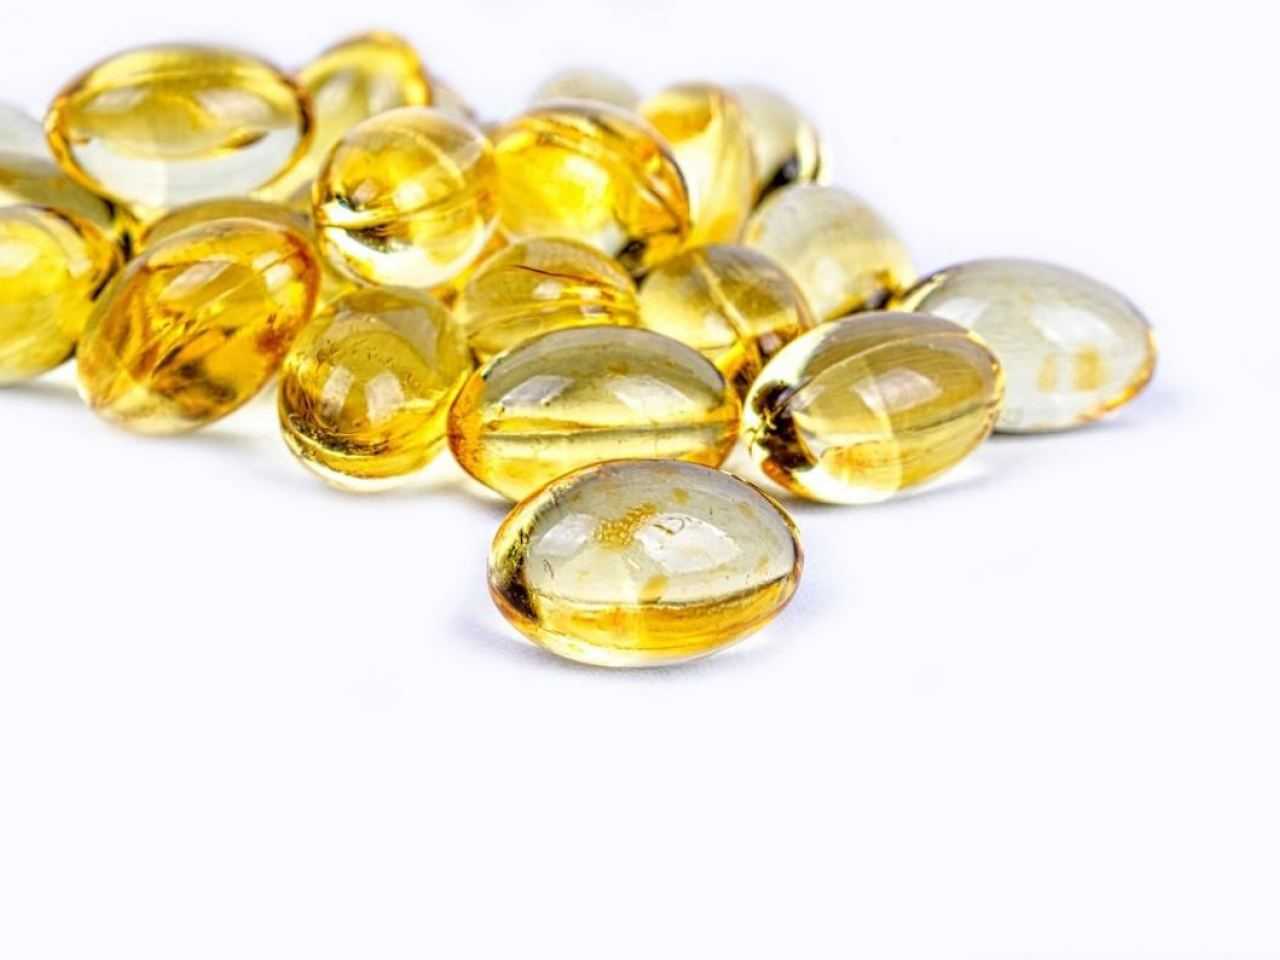 lens genade dauw Vitamine D niet zonder gevaar: Belg overleden aan overdosis | Redactie24